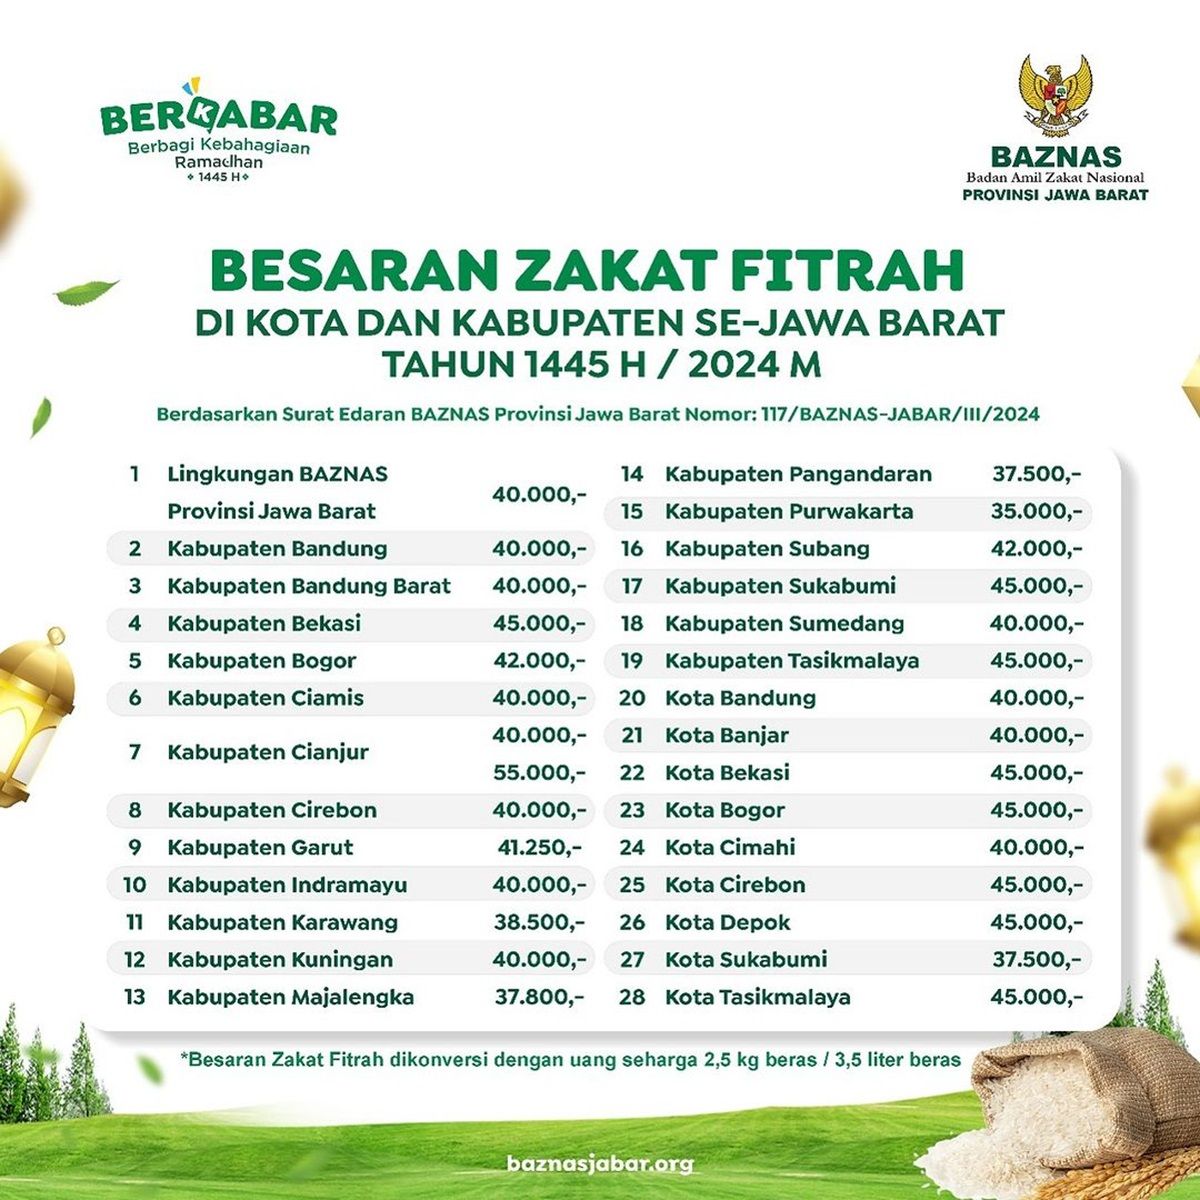 Daftar besaran Zakat Fitrah 2024 untuk wilayah Jawa Barat berdasarkan Badan Amil Zakat Nasional (BAZNAS).